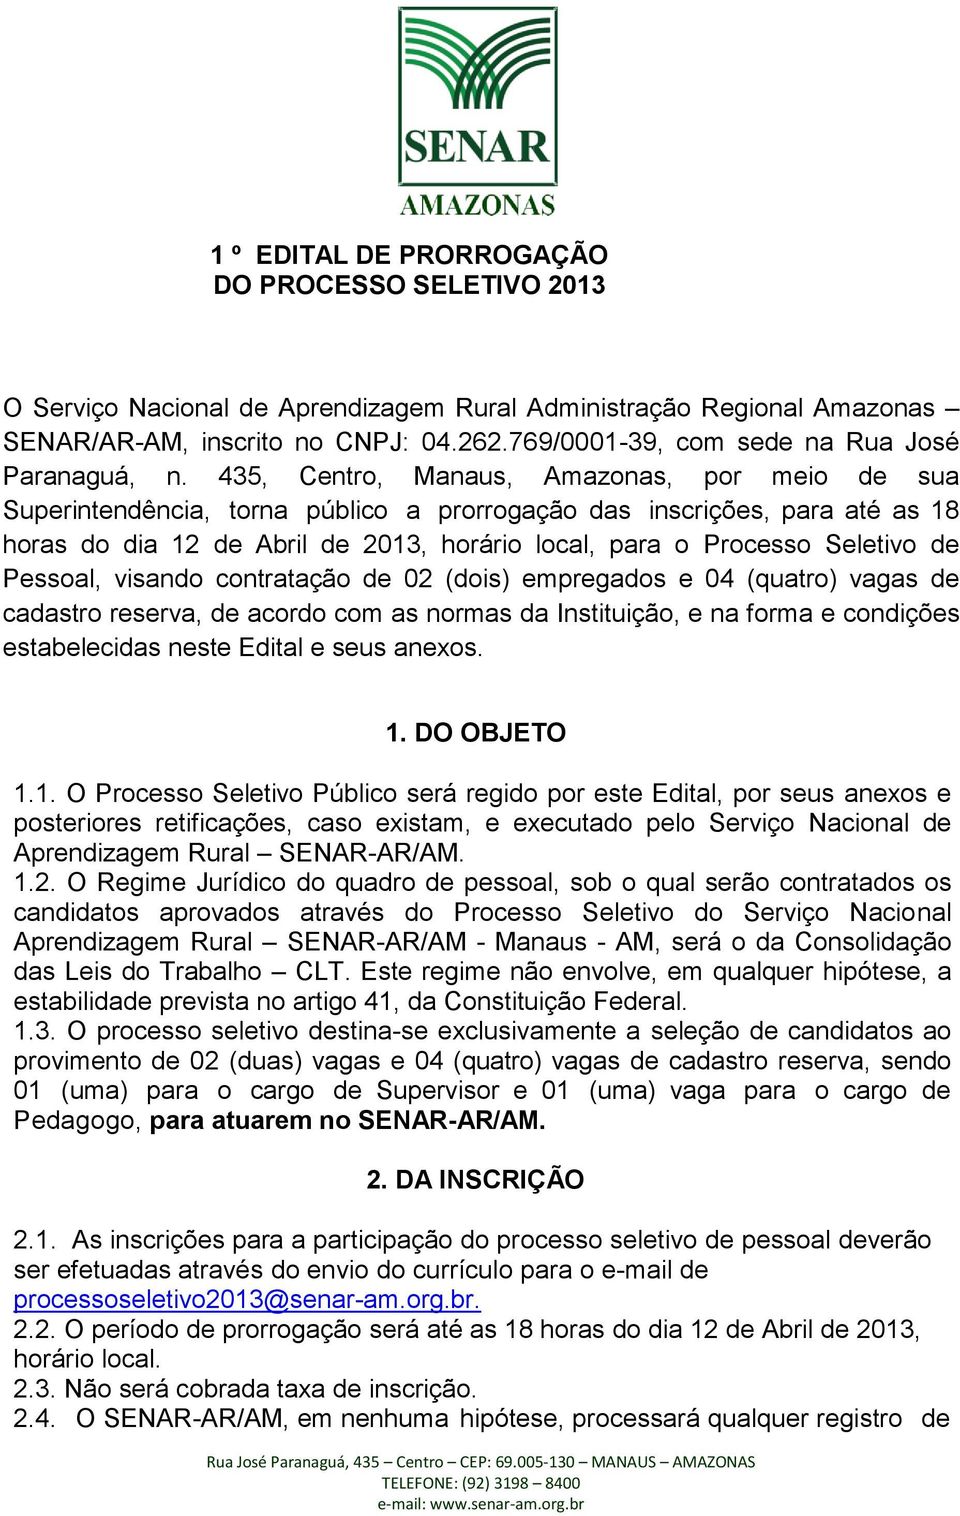 435, Centro, Manaus, Amazonas, por meio de sua Superintendência, torna público a prorrogação das inscrições, para até as 18 horas do dia 12 de Abril de 2013, horário local, para o Processo Seletivo